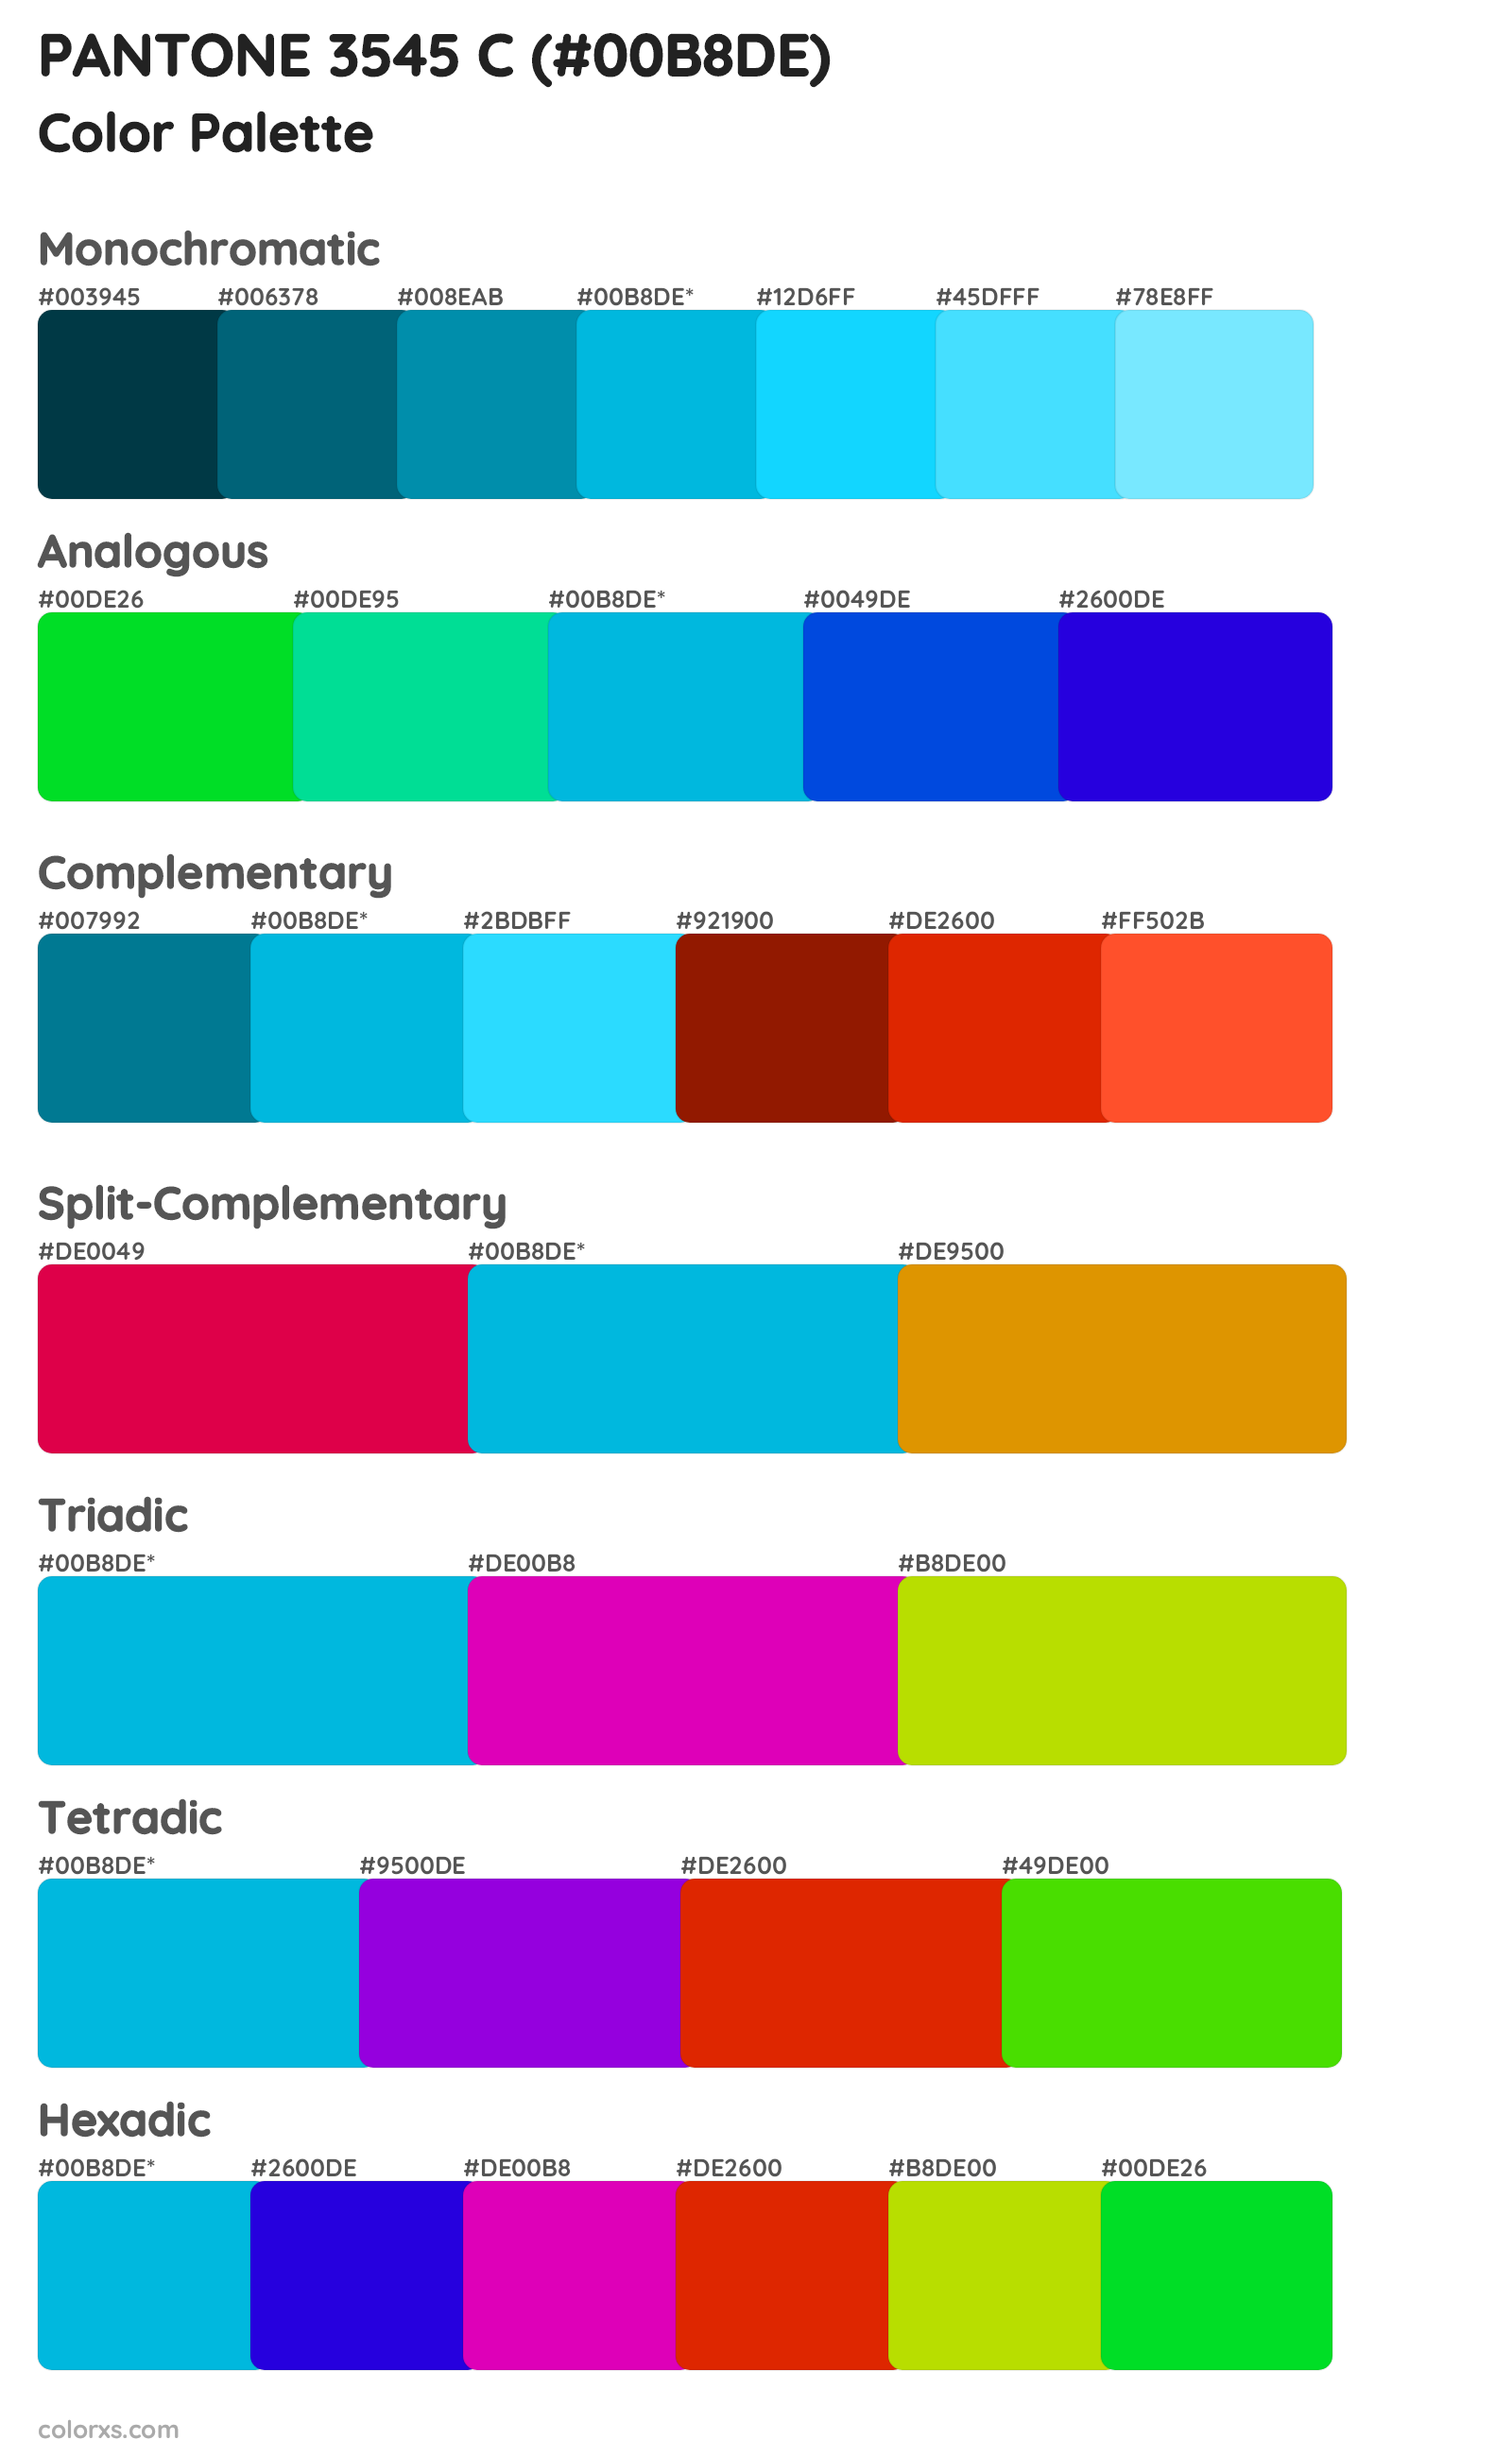 PANTONE 3545 C Color Scheme Palettes